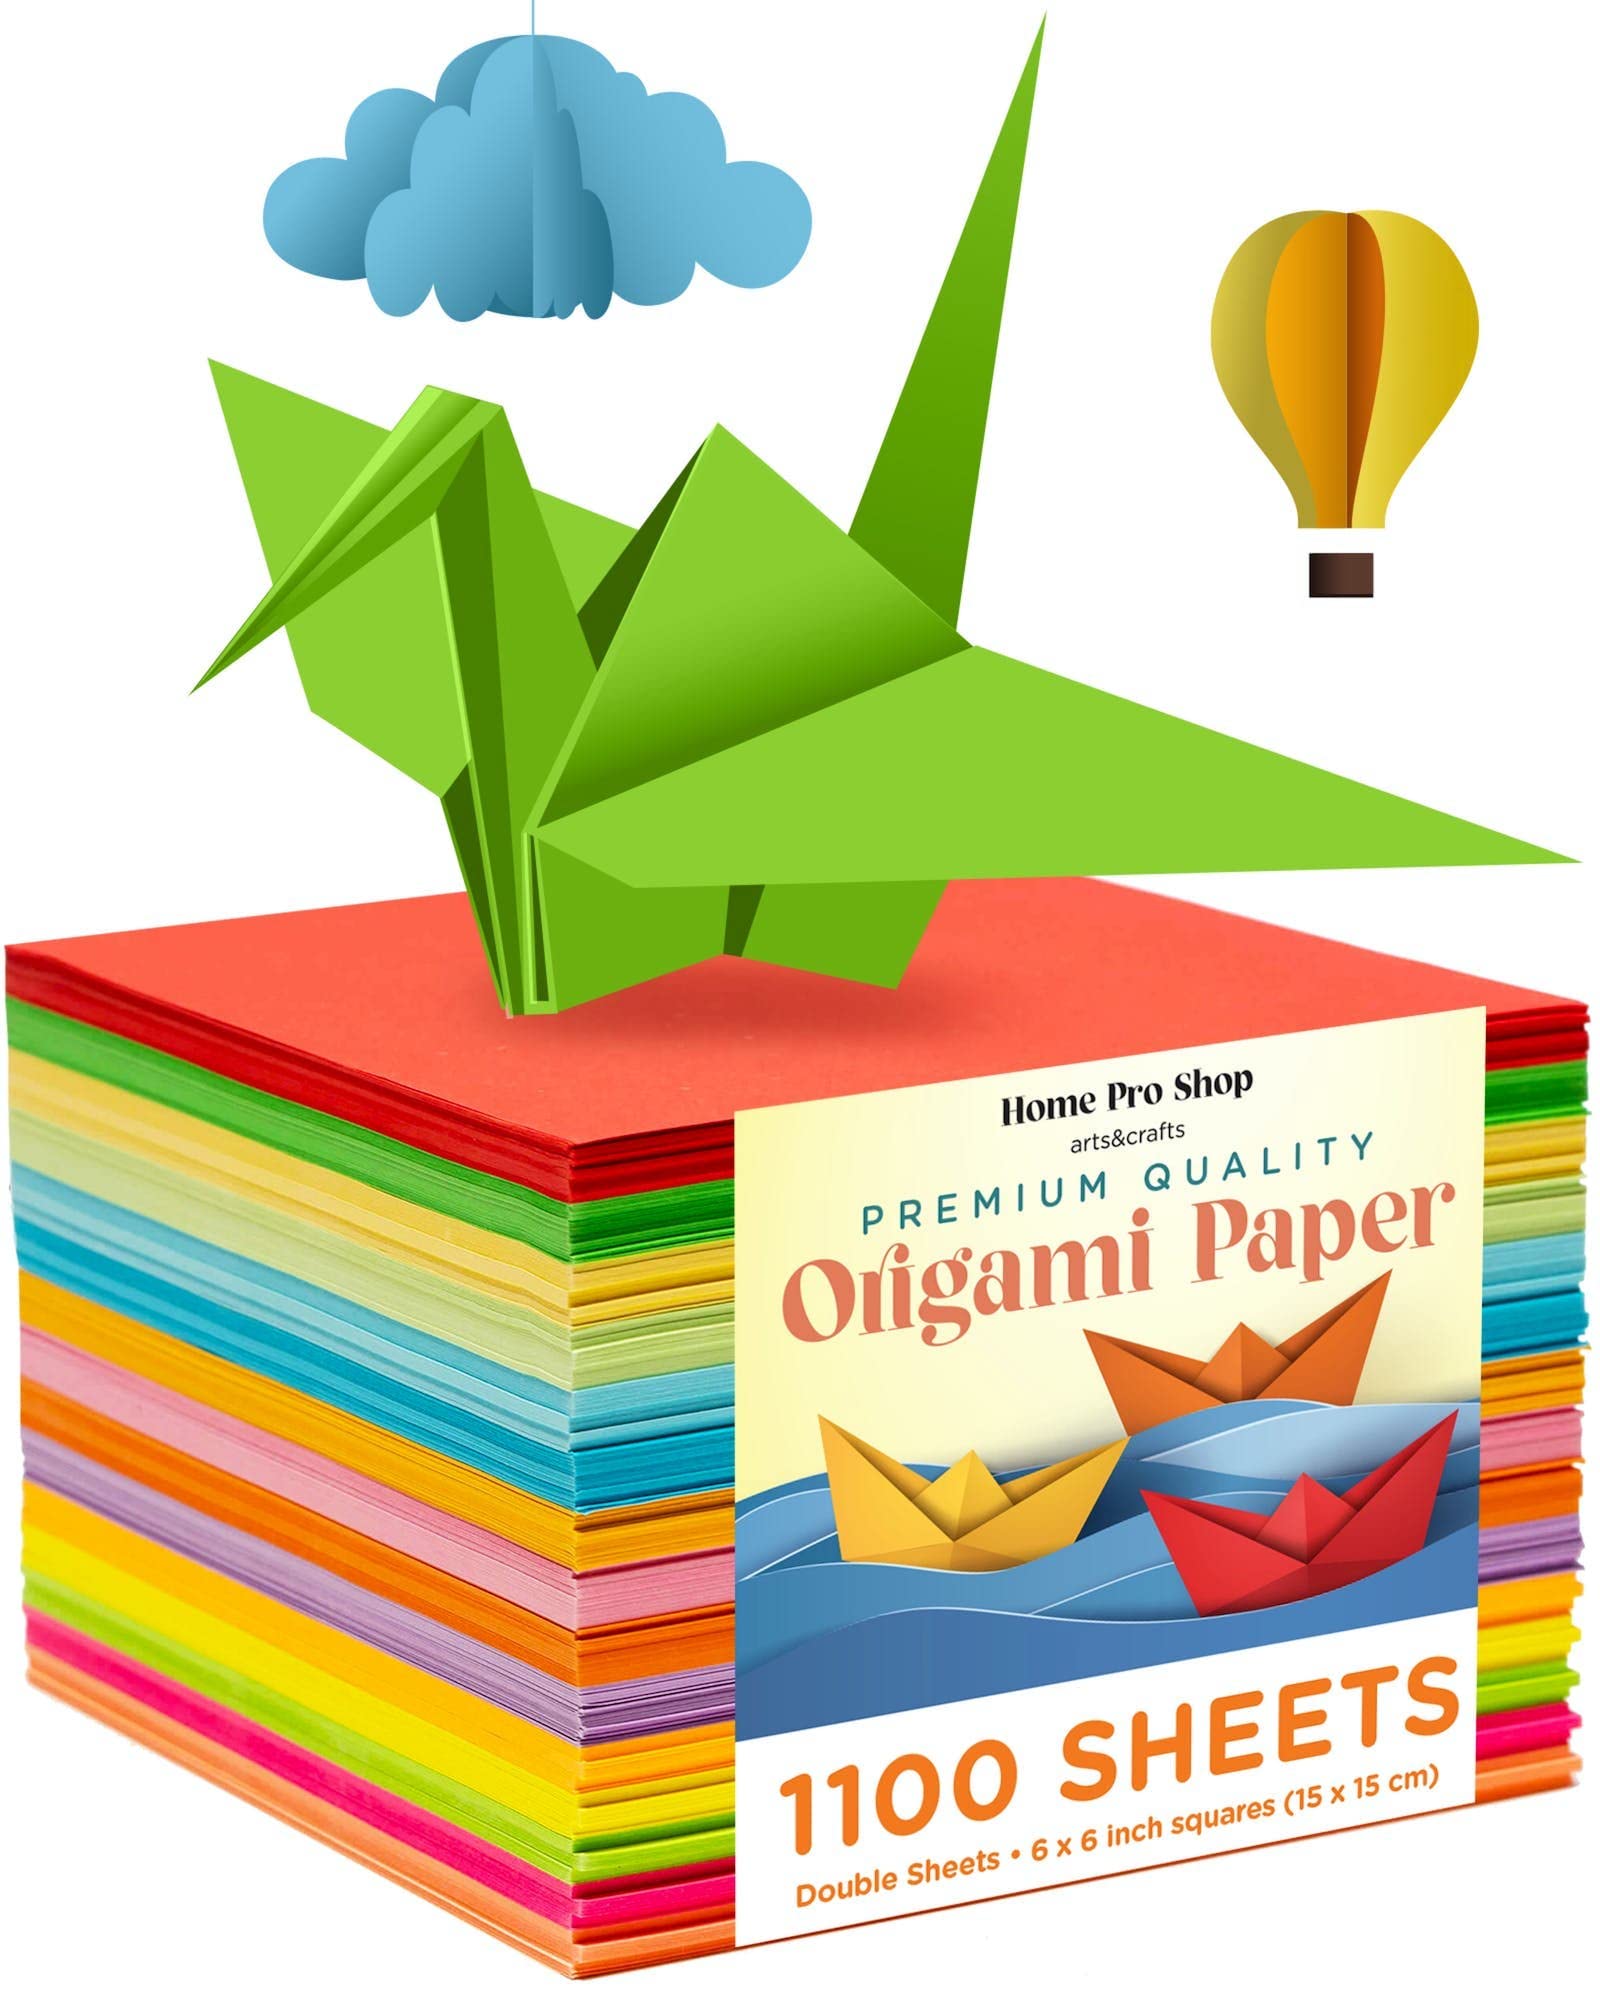 Origami Activities for Children